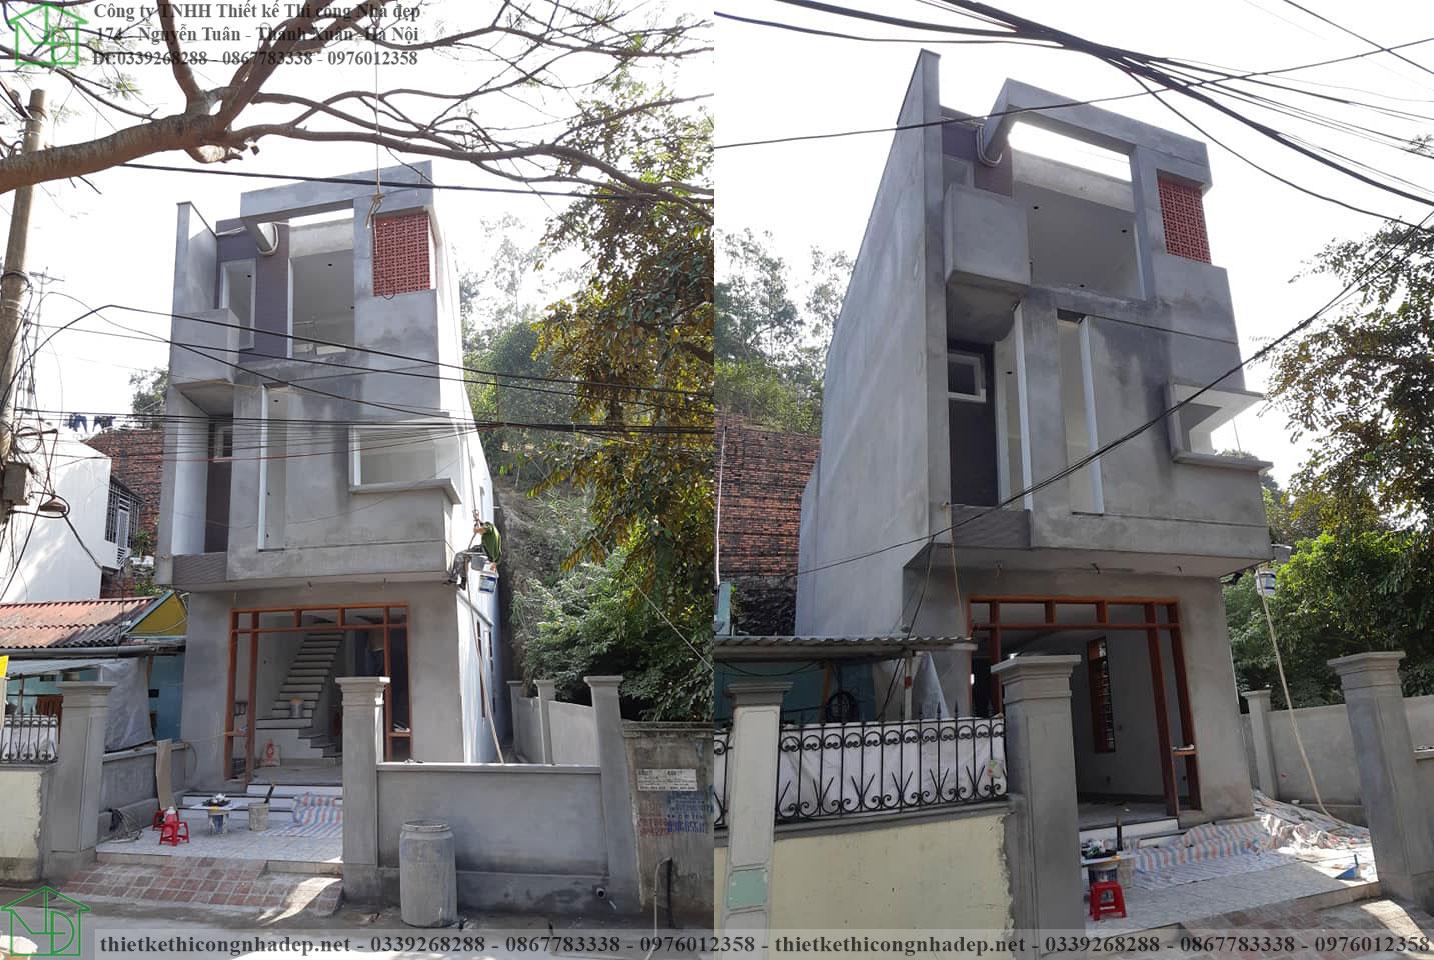 Hình ảnh thực tế mẫu nhà đẹp 3 tầng 5x11m tại Quảng Ninh NDNP3T52